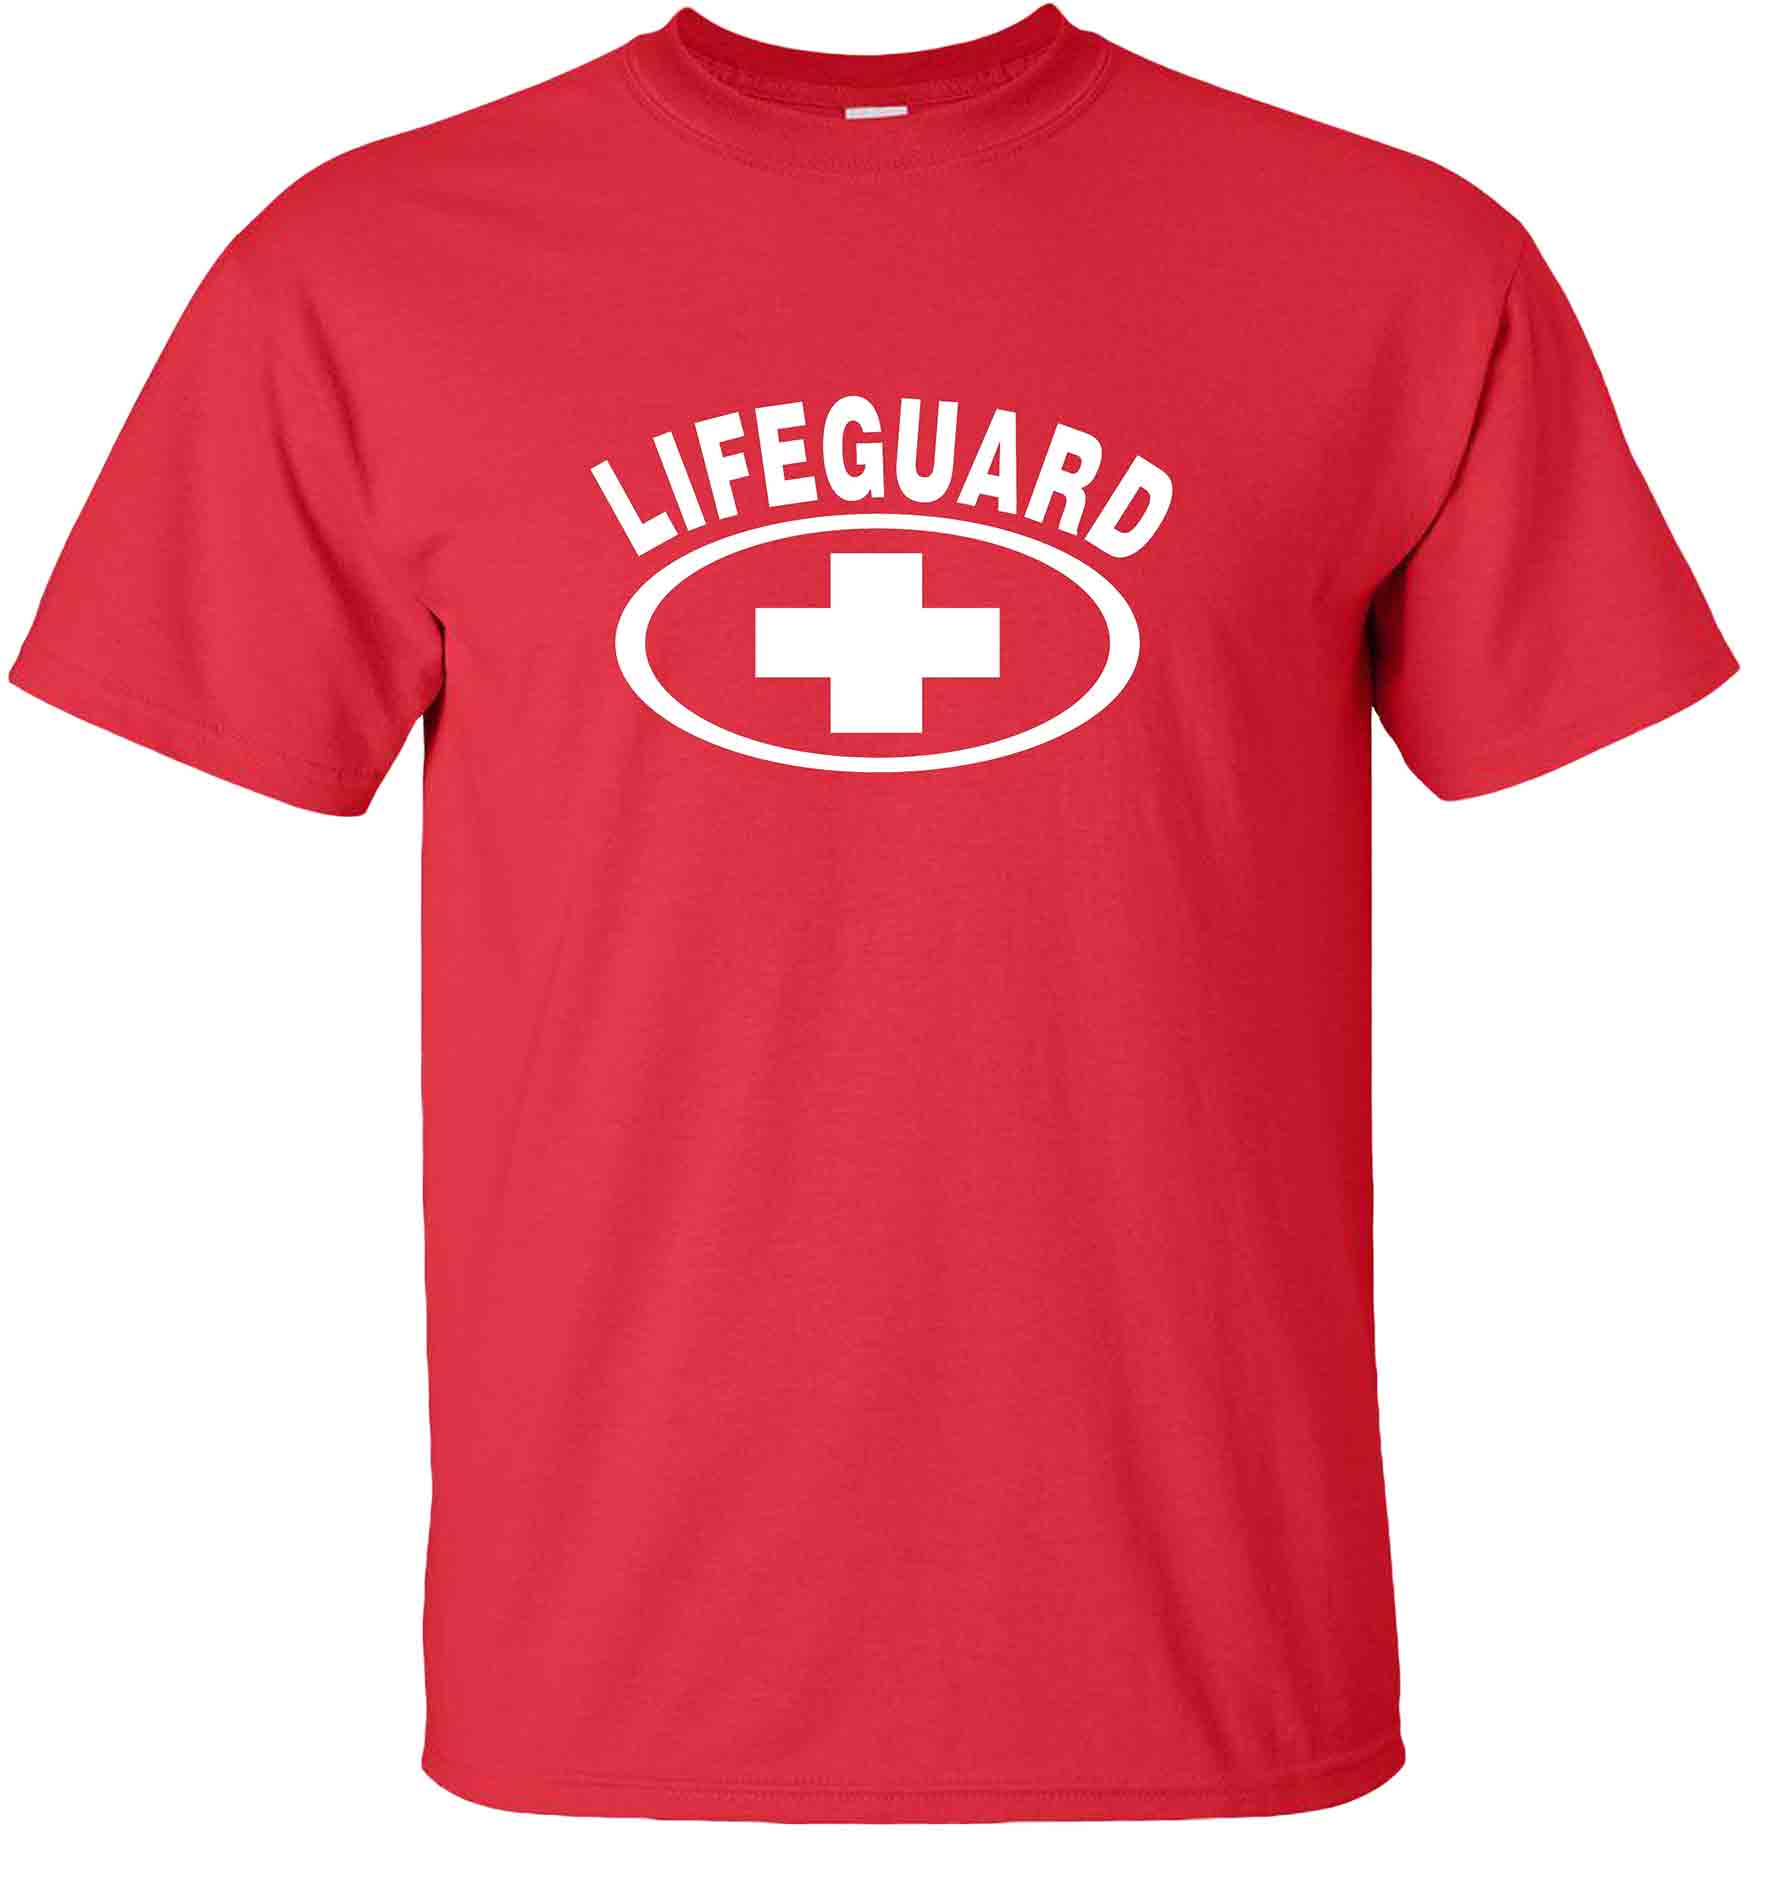 lifeguard-t-shirt-red.jpg